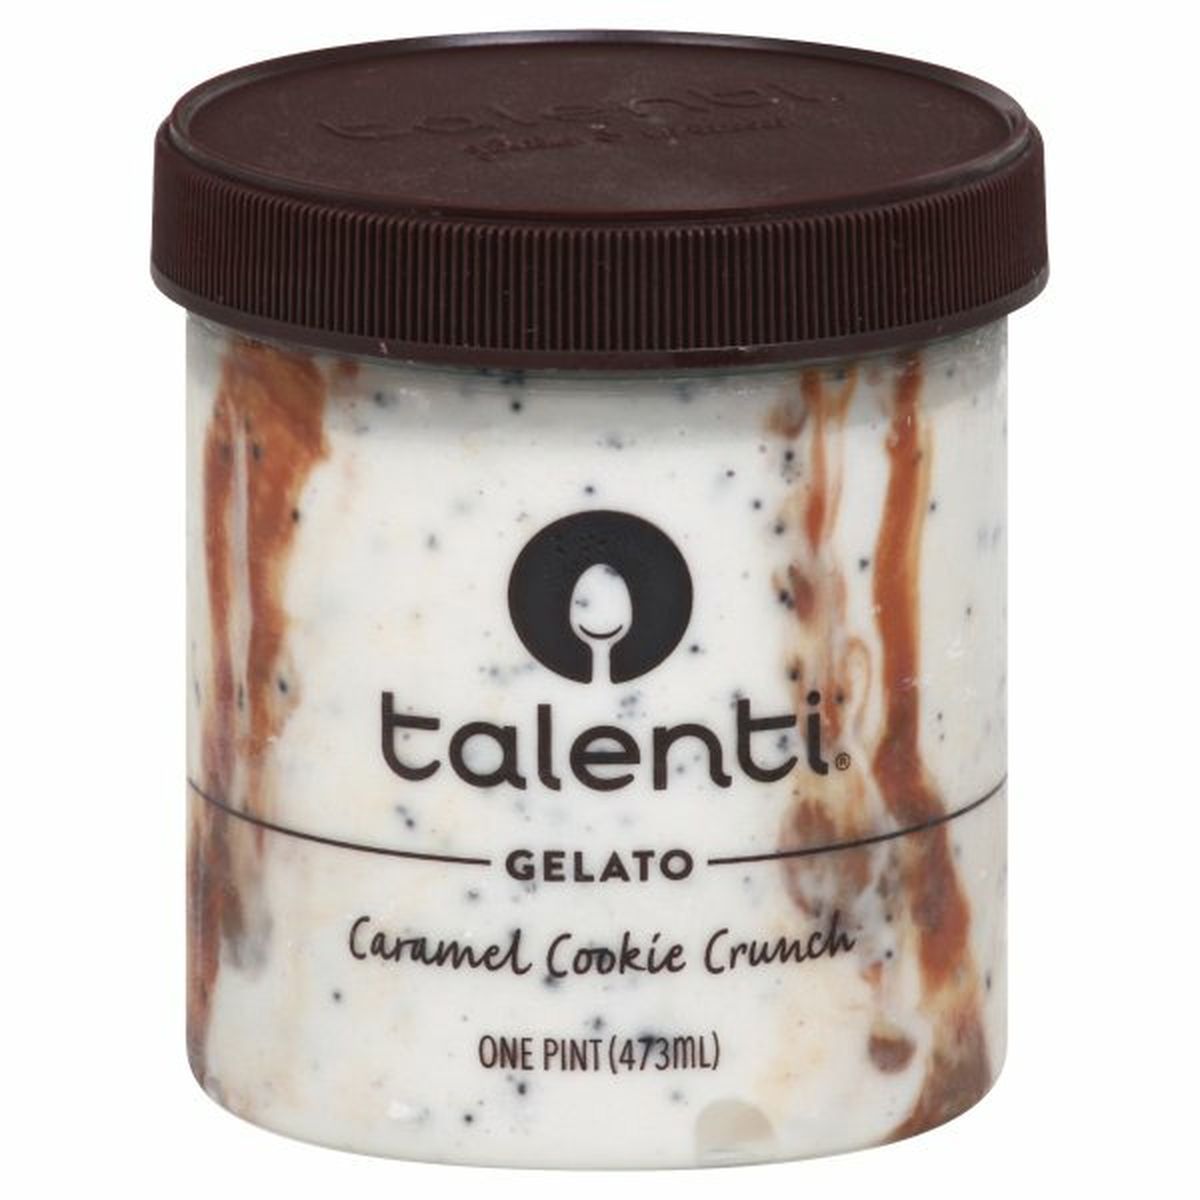 Calories in Talenti Gelato, Caramel Cookie Crunch